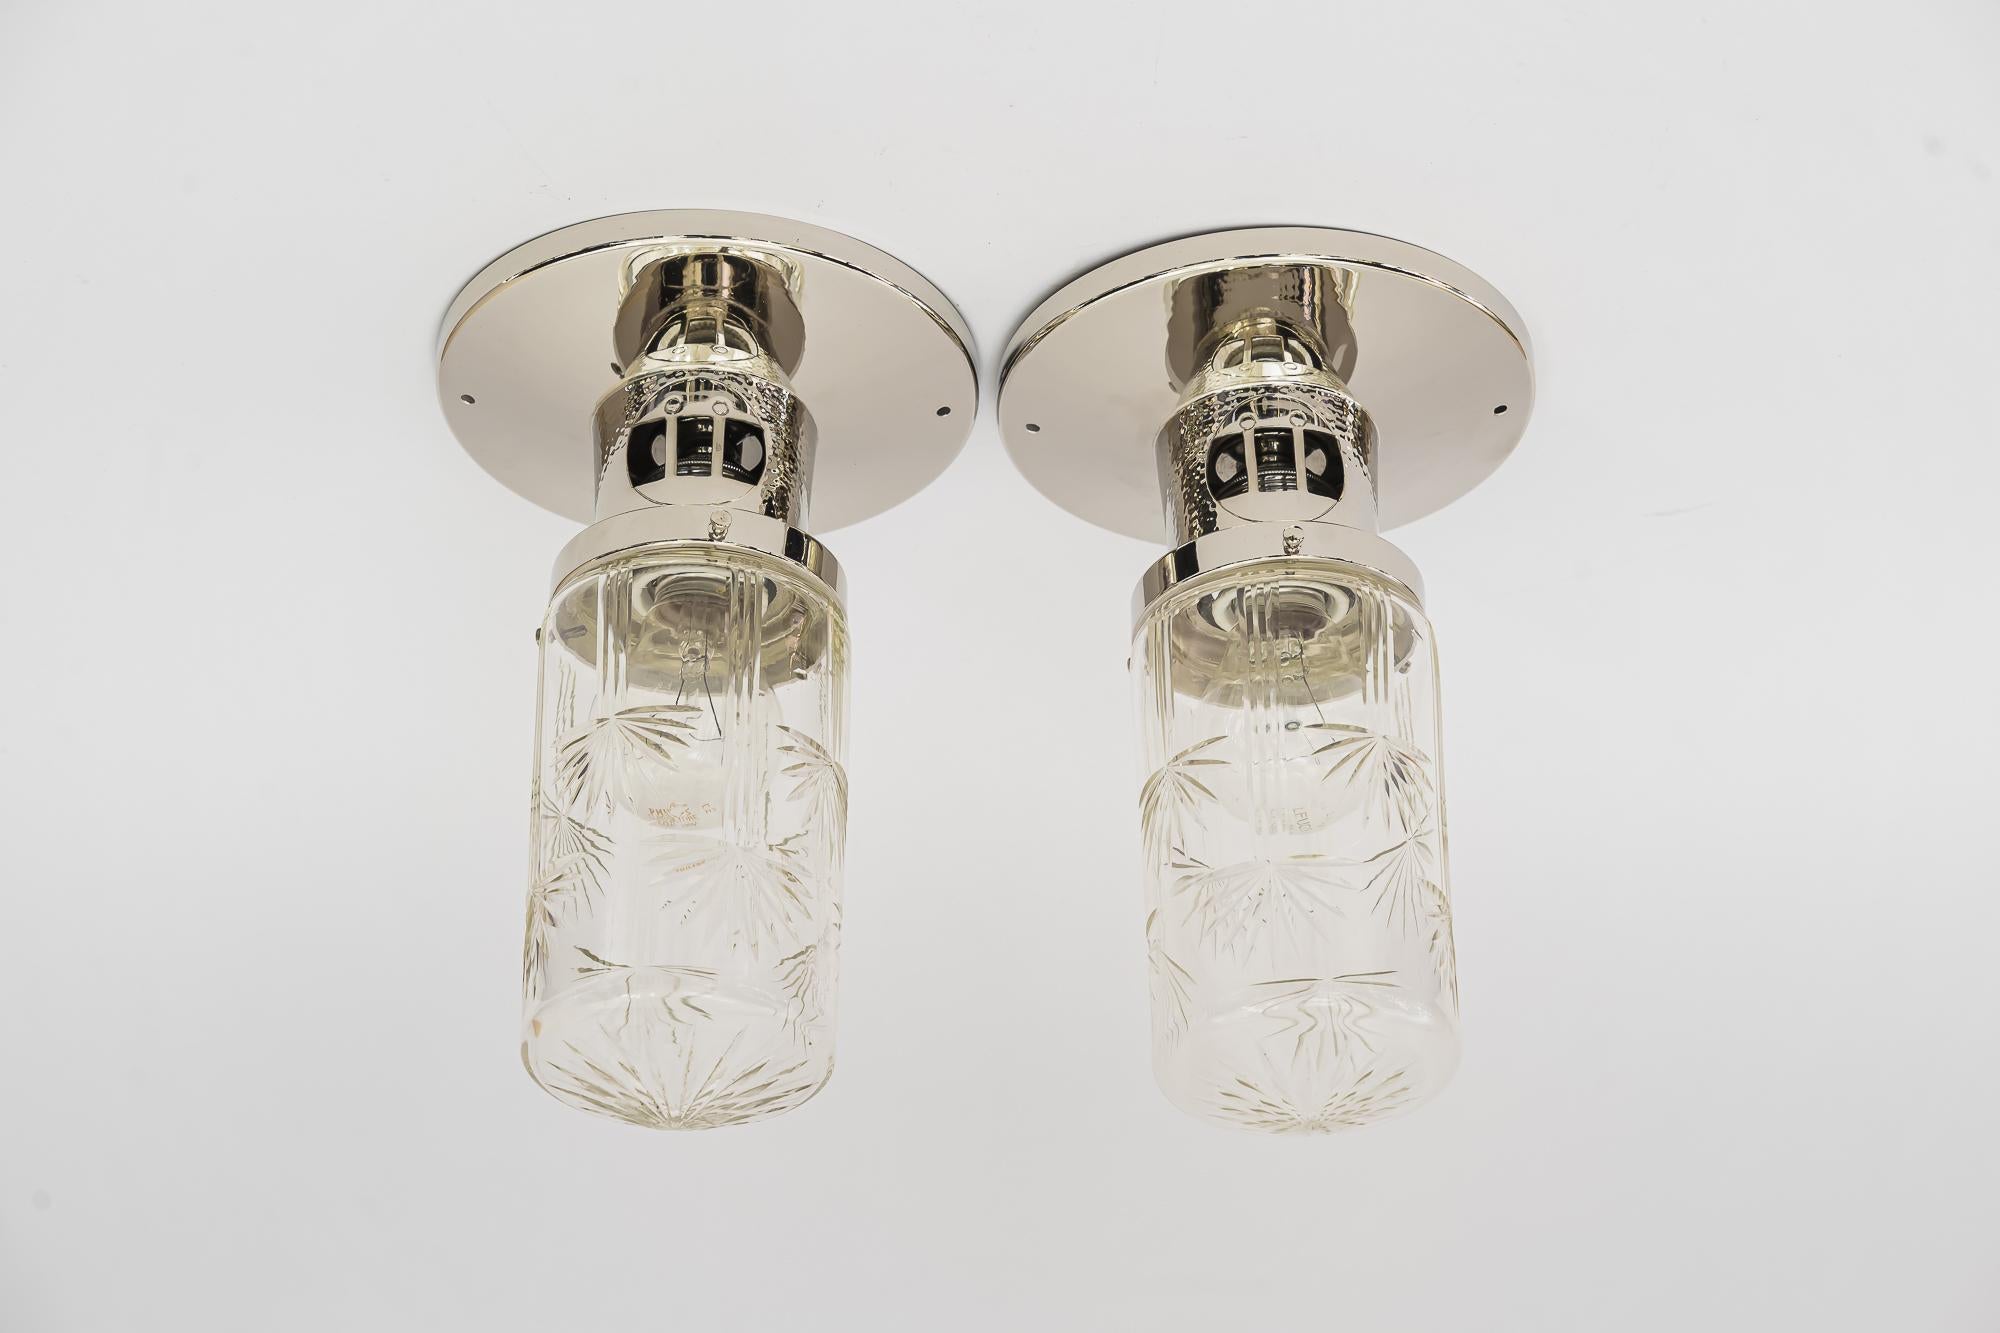 2 plafonniers Art Déco martelés viennois vers 1920
Abat-jour originaux en verre ancien coupé
